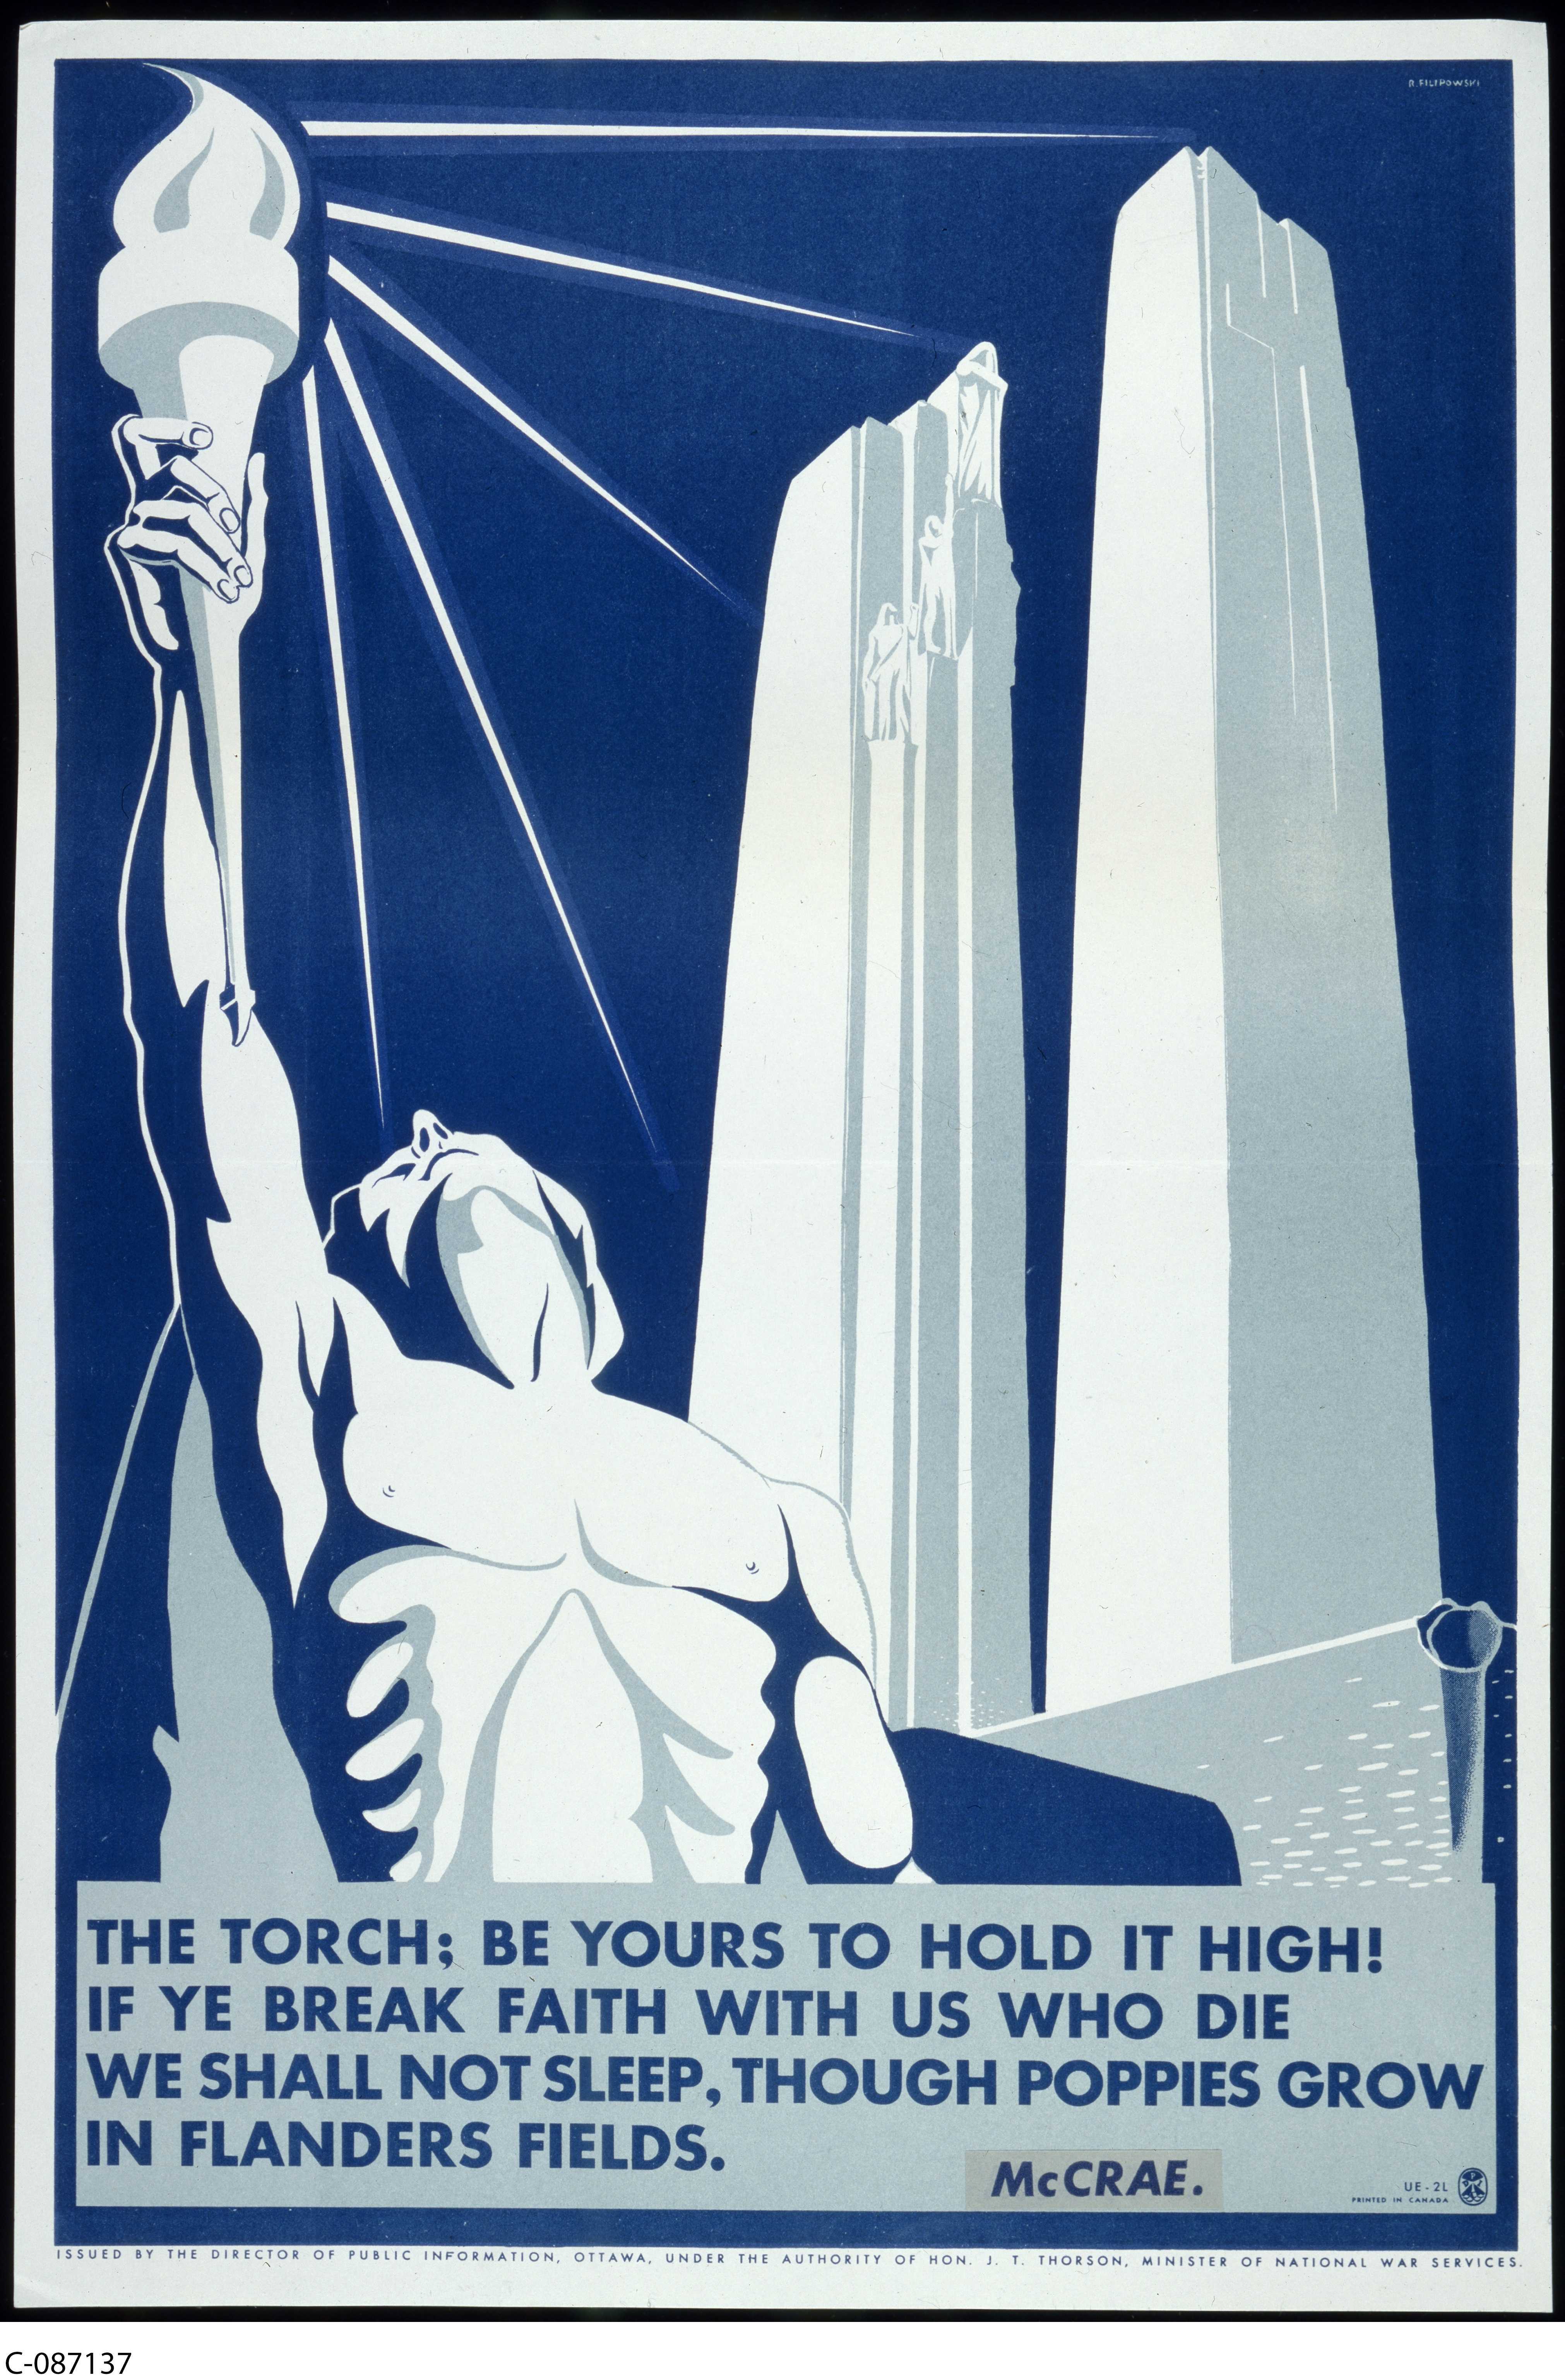 Affiche illustrée en bleu et blanc. Les piliers du Mémorial de Vimy à droite; un homme torse nu, les bras tendus vers le ciel, tient un flambeau allumé, d’où s’échappent des faisceaux de lumière.